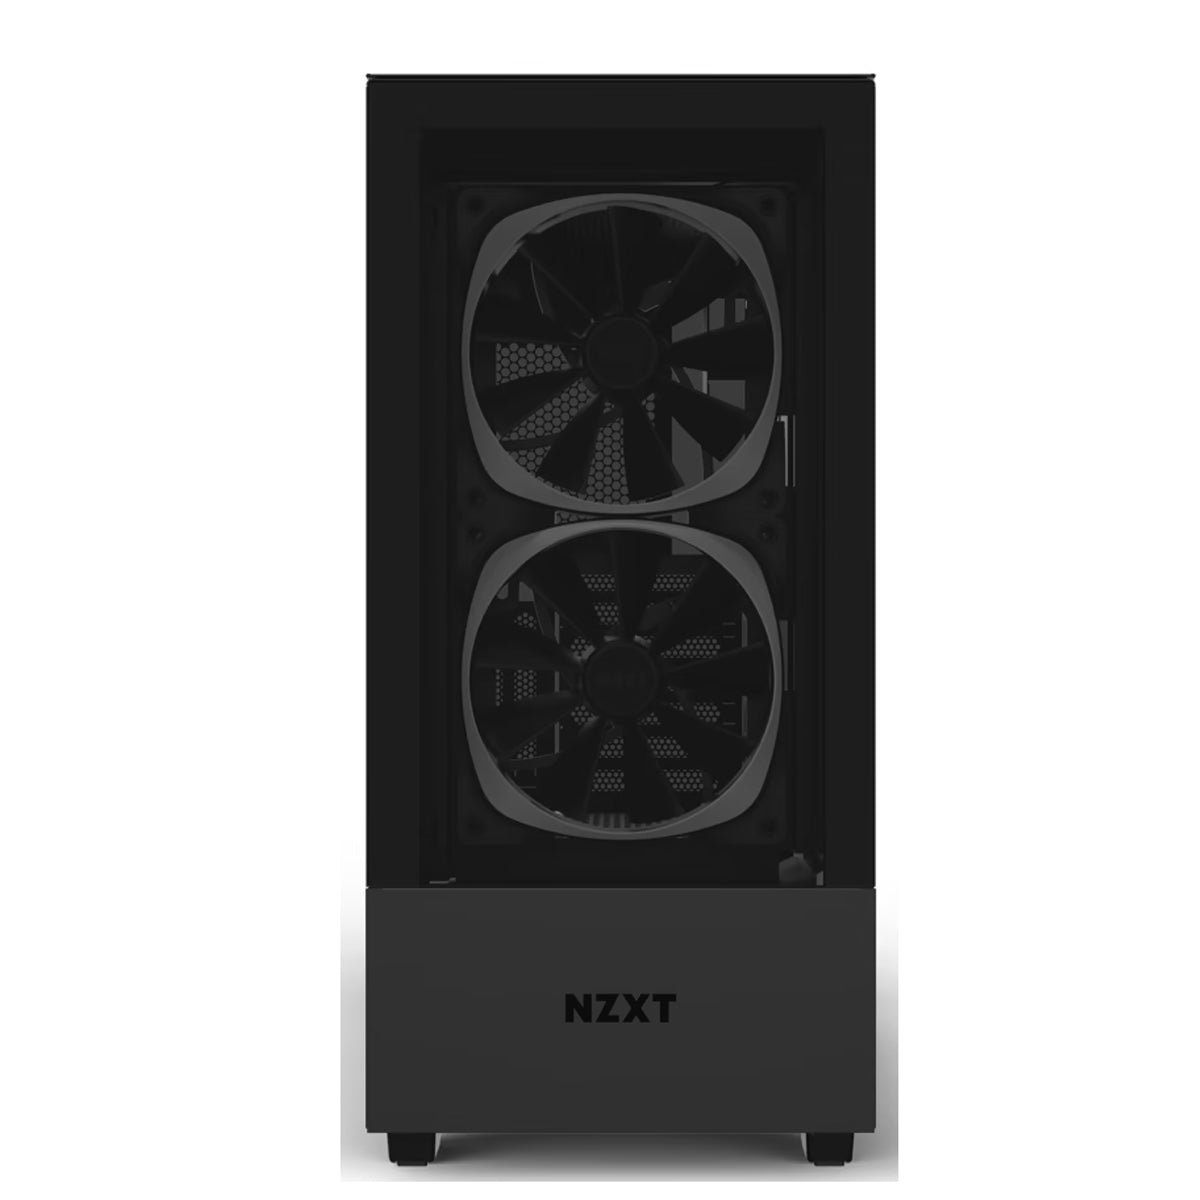 NZXT - AMD Ryzen 7 - 1TB M.2 SSD - RTX 3070 - Waterkoeling - GamePC.BNZXT100106 - WiFi